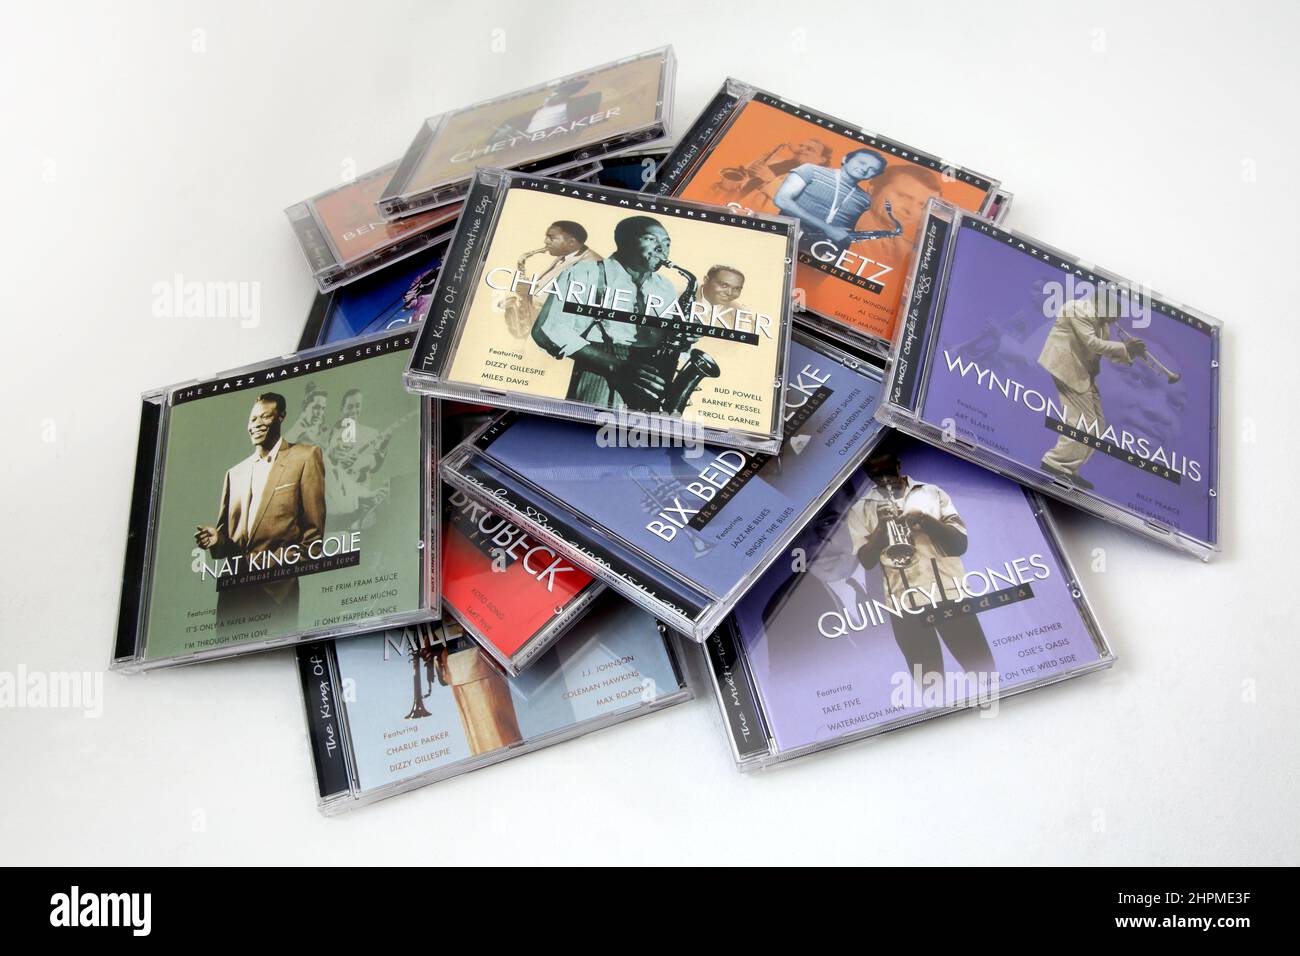 Collection de disques compacts de musique jazz Banque D'Images